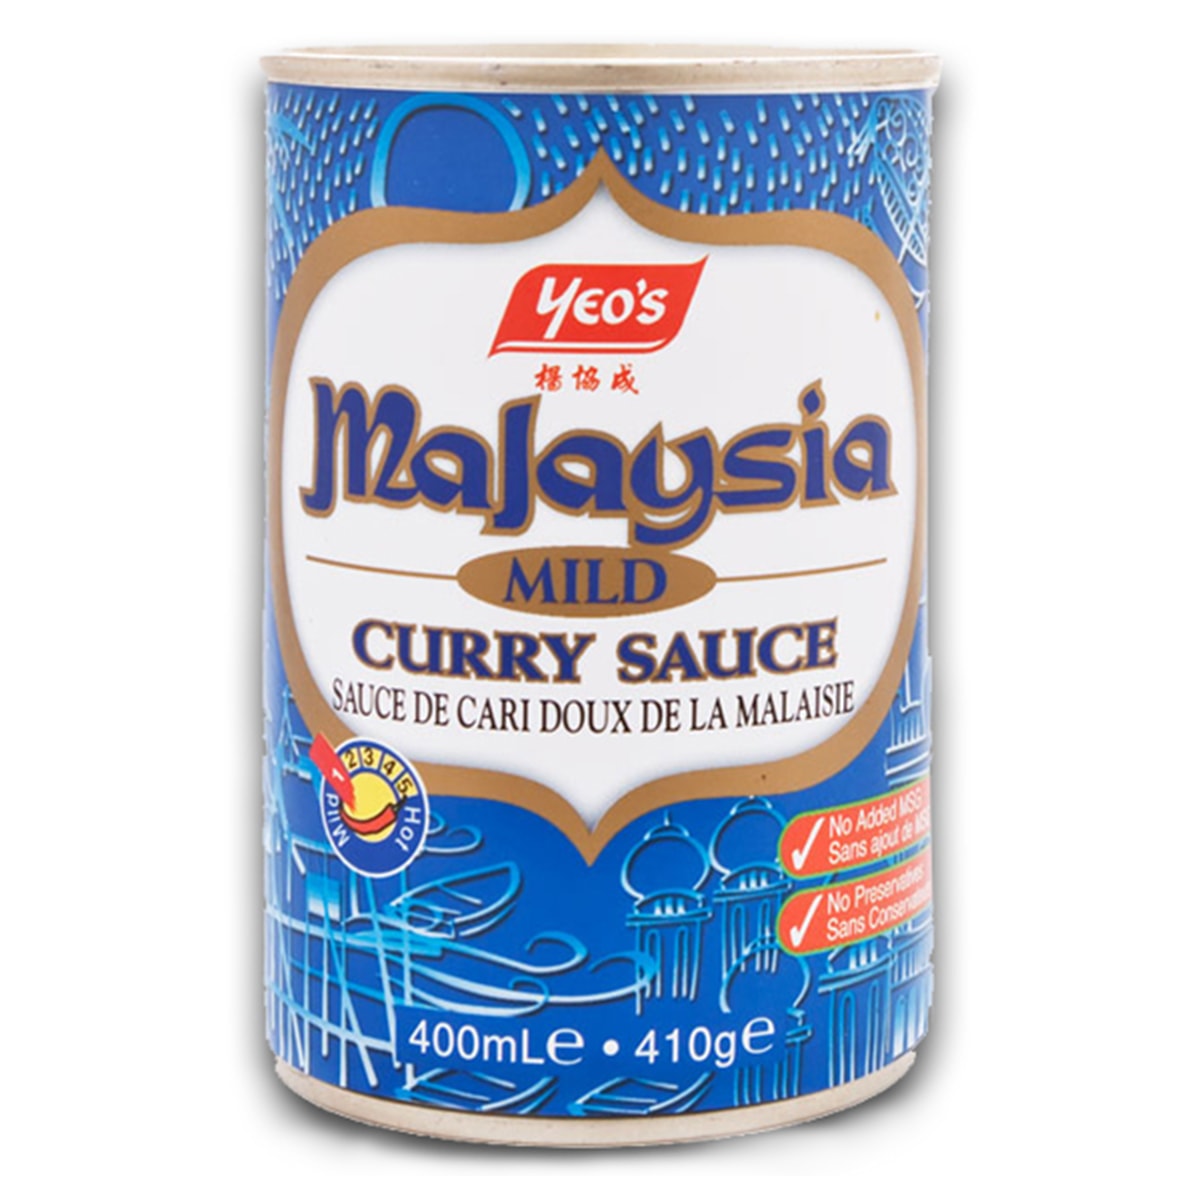 Malaysia Mild Curry Sauce - 410 gm